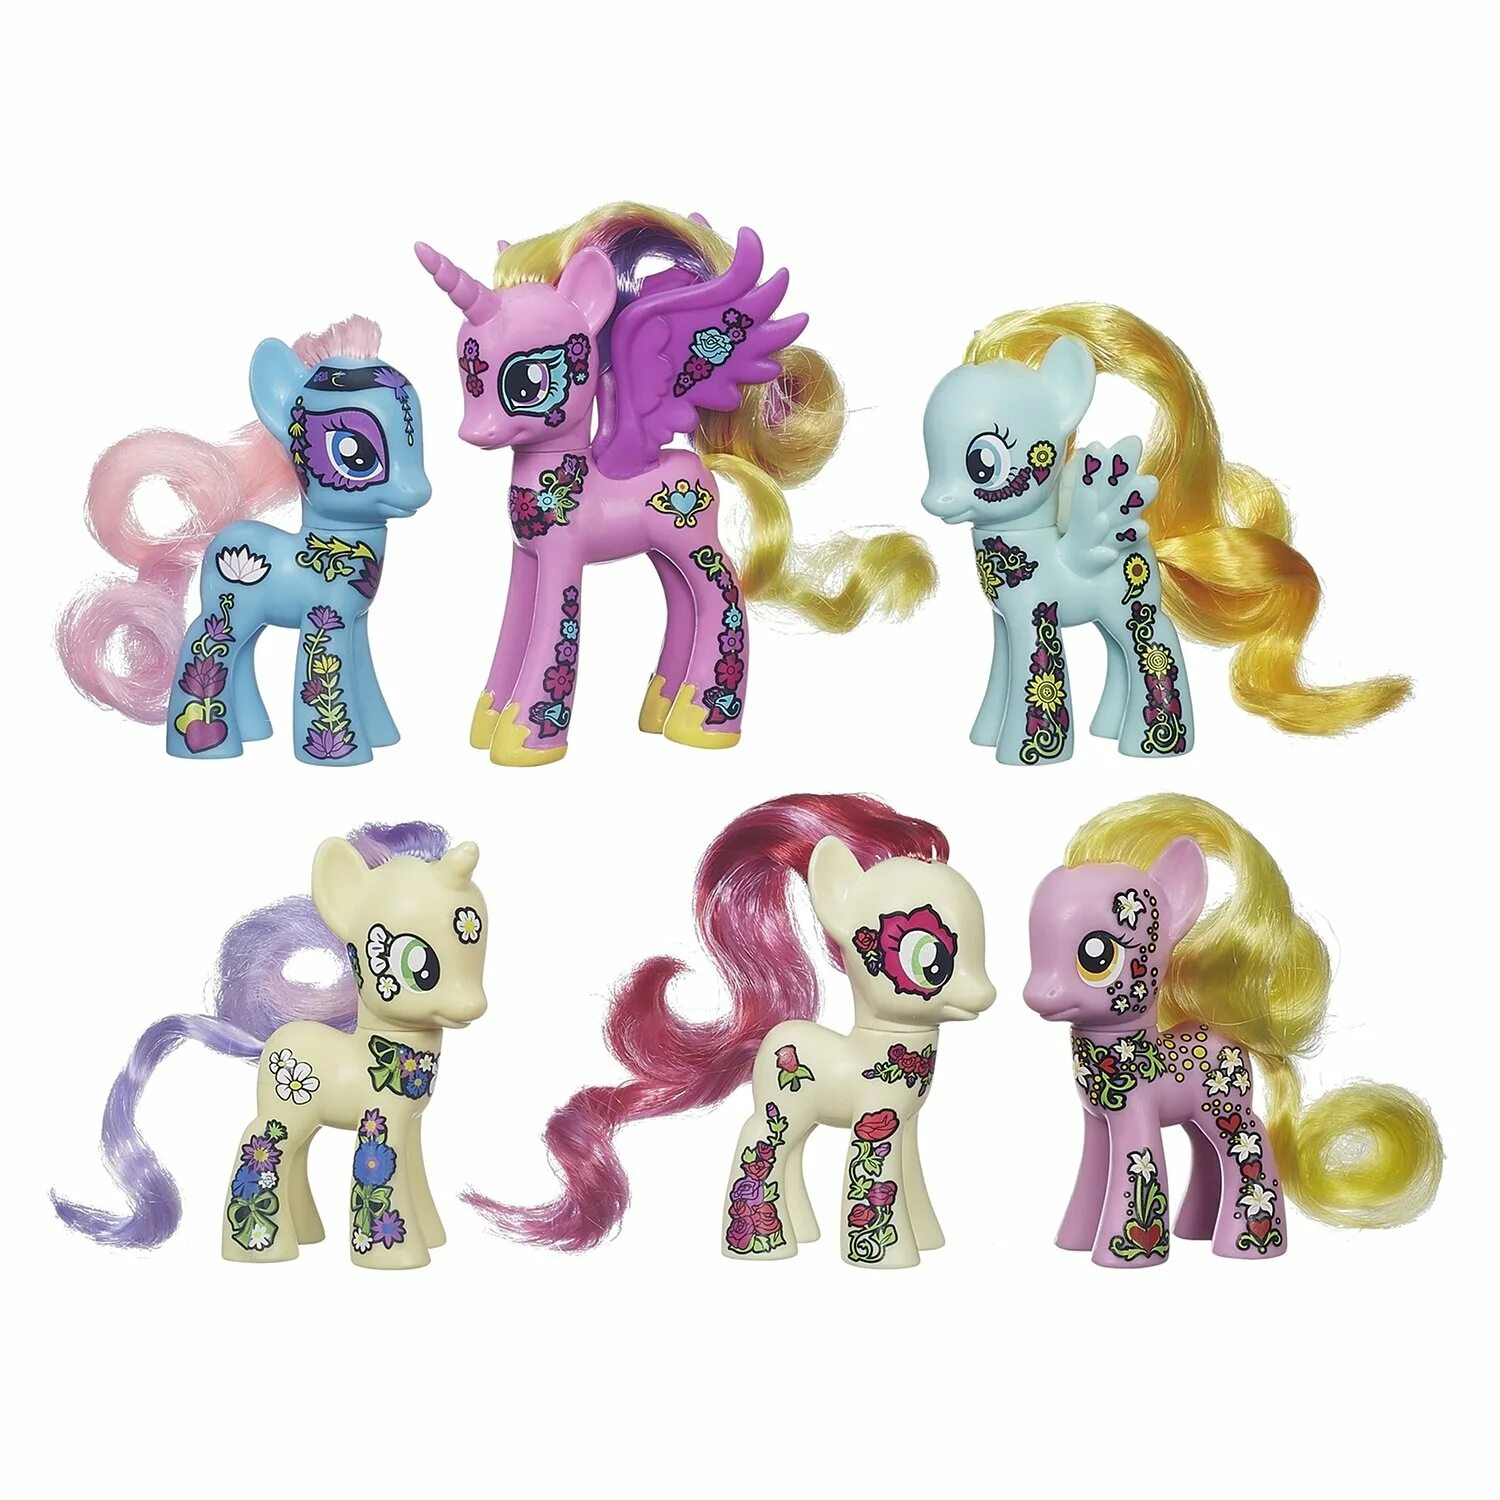 Где найти новые игрушки. Набор 6 пони Ponymania. My little Pony набор Ponymania. Ponymania Friendship Blossom. МЛП набор блоссом.